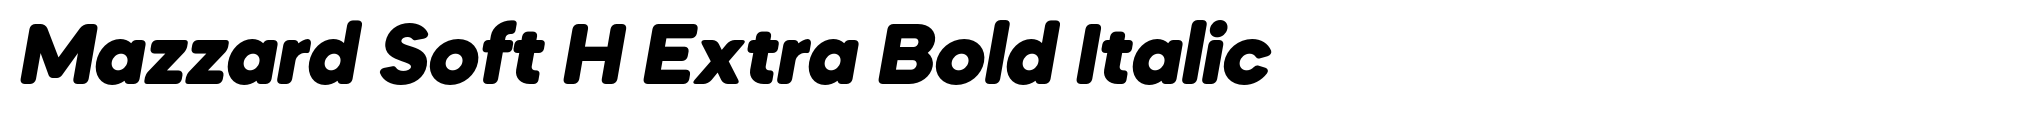 Mazzard Soft H Extra Bold Italic image